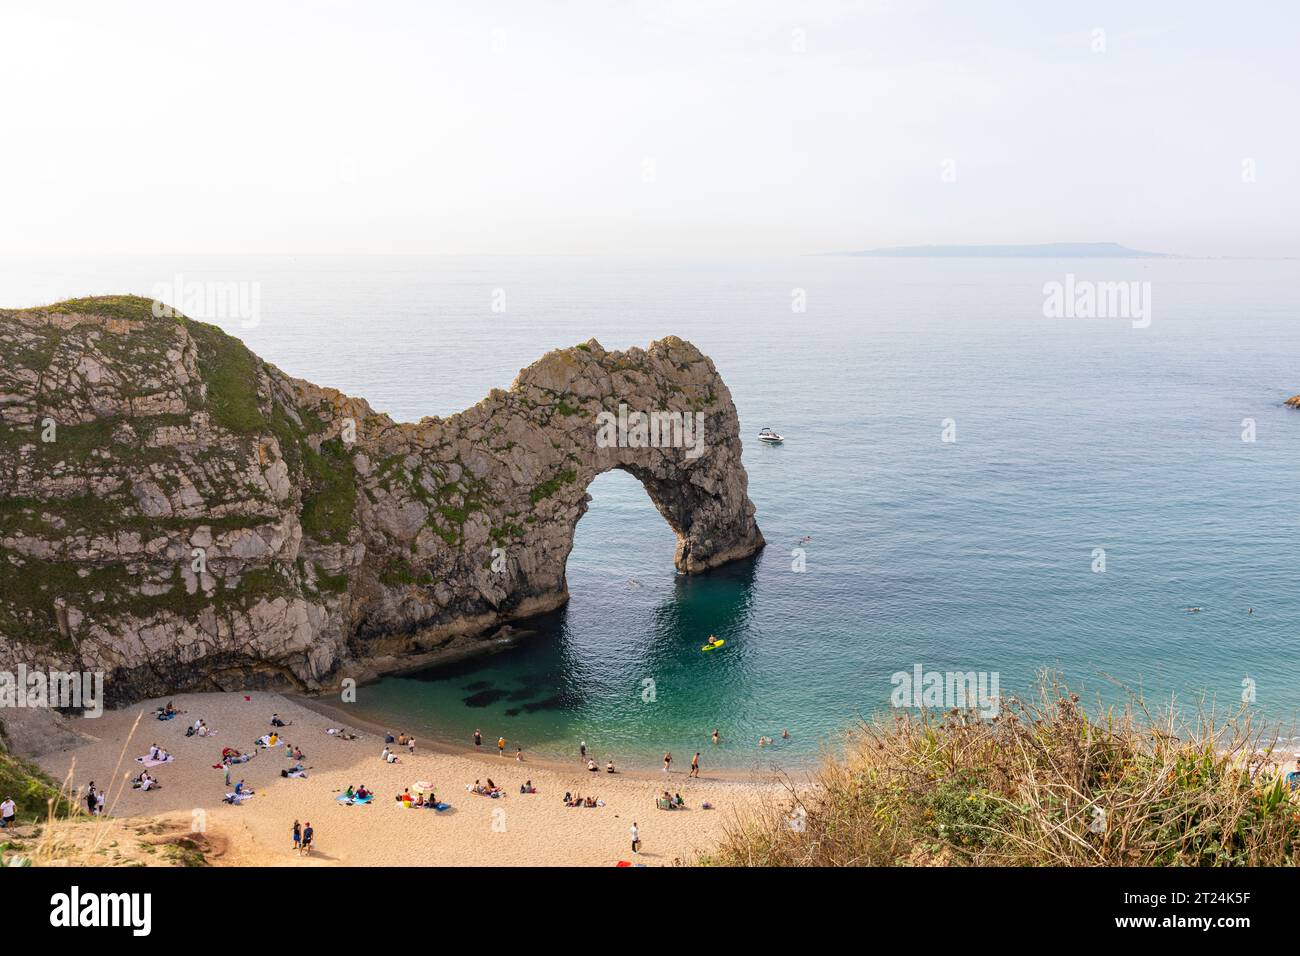 La géologie de l'arche calcaire de Durdle Door sur la côte jurassique, Dorset, Angleterre, Royaume-Uni, site du patrimoine mondial de l'UNESCO, septembre 2023 Banque D'Images